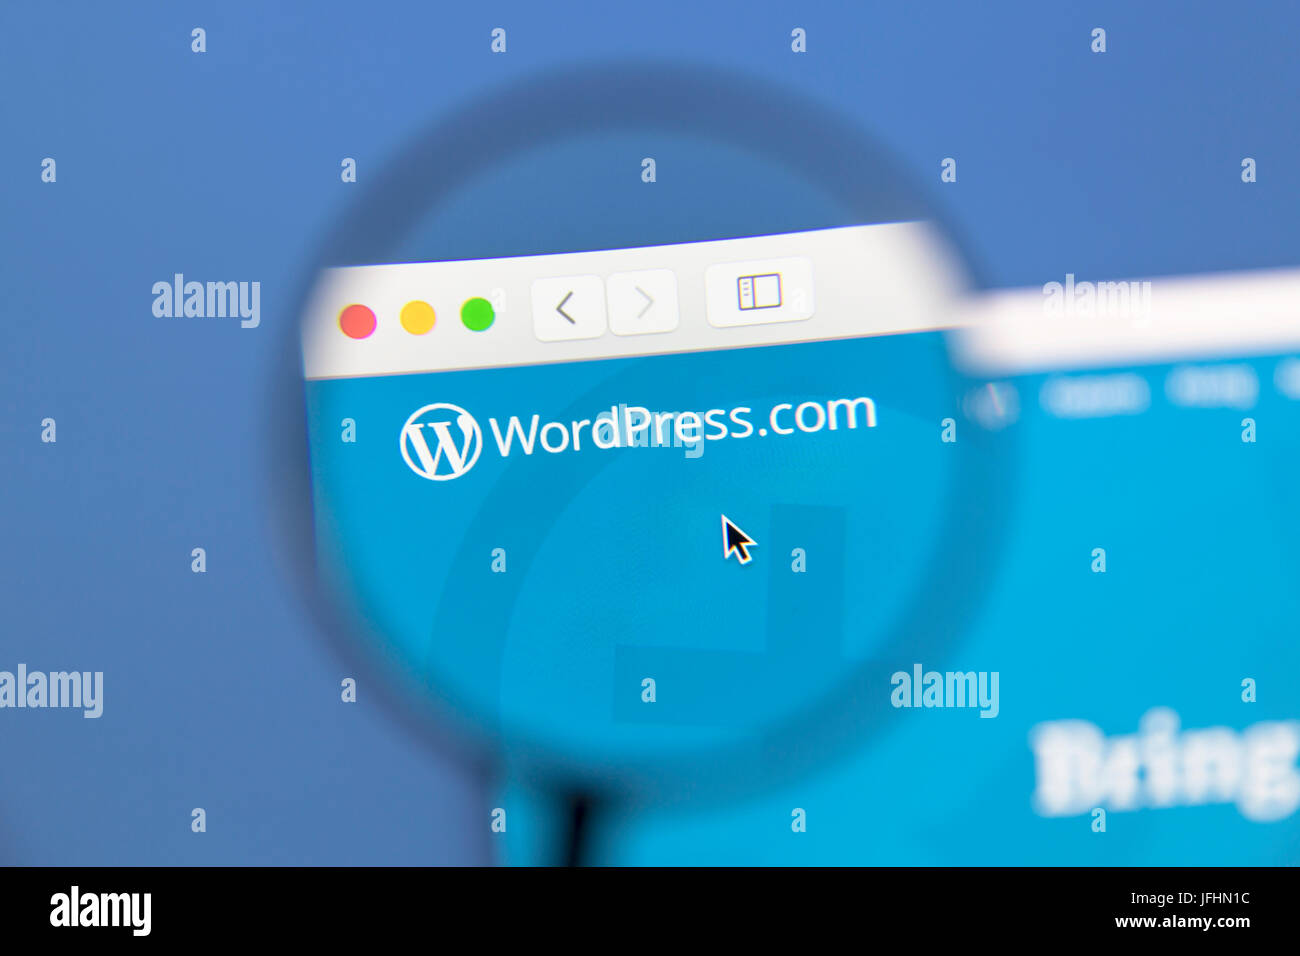 Wordpress sitio web bajo una lupa. WordPress es un servicio gratuito y de código abierto herramienta de creación de blogs. Foto de stock